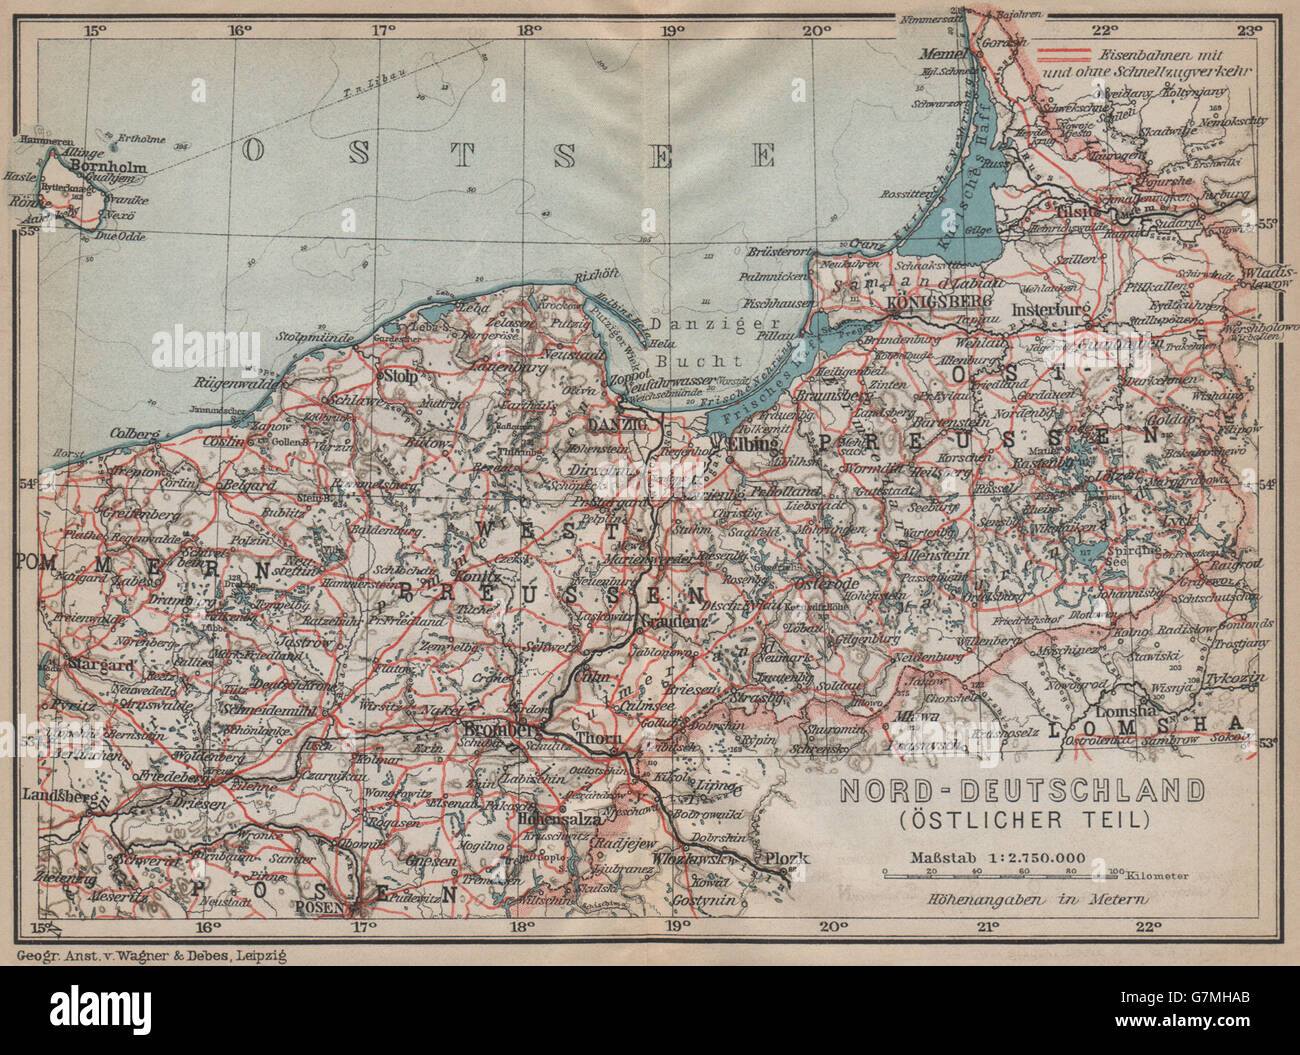 NORD-DEUTSCHLAND (ÖSTLICHER TEIL). Preußen. Nord-Polen-Kaliningrad, 1913 Karte Stockfoto